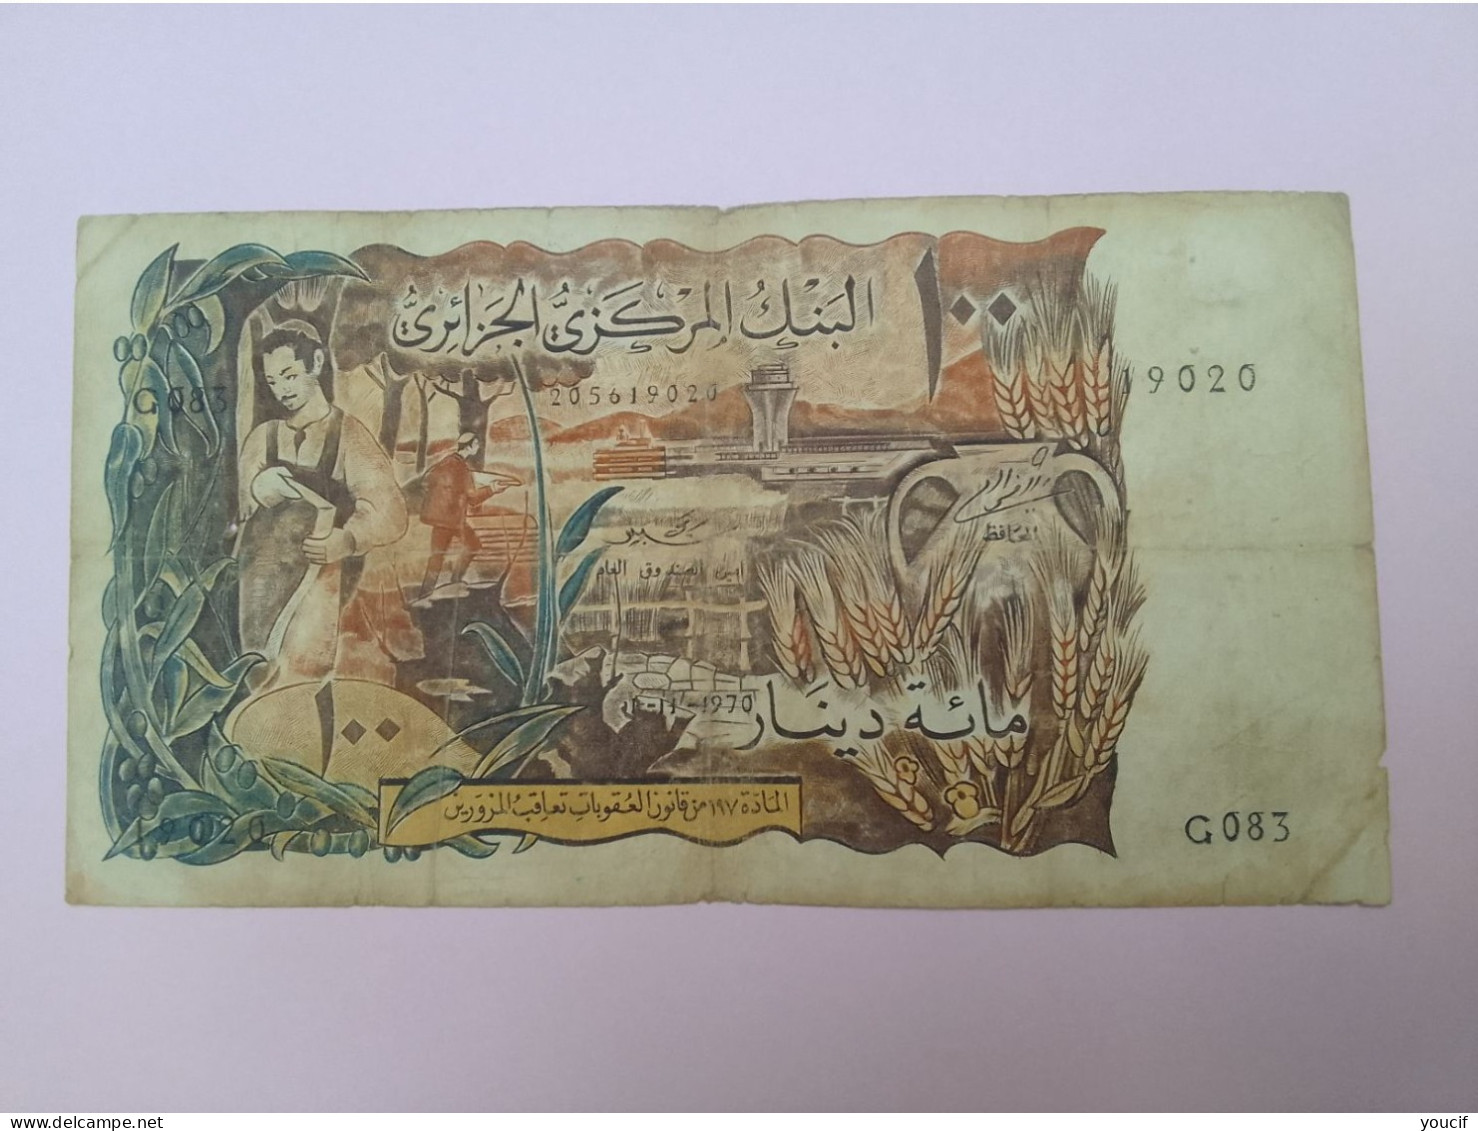 Billet De Banque D Algerie 100 Dinars 01 Novembre 1970 - Algeria